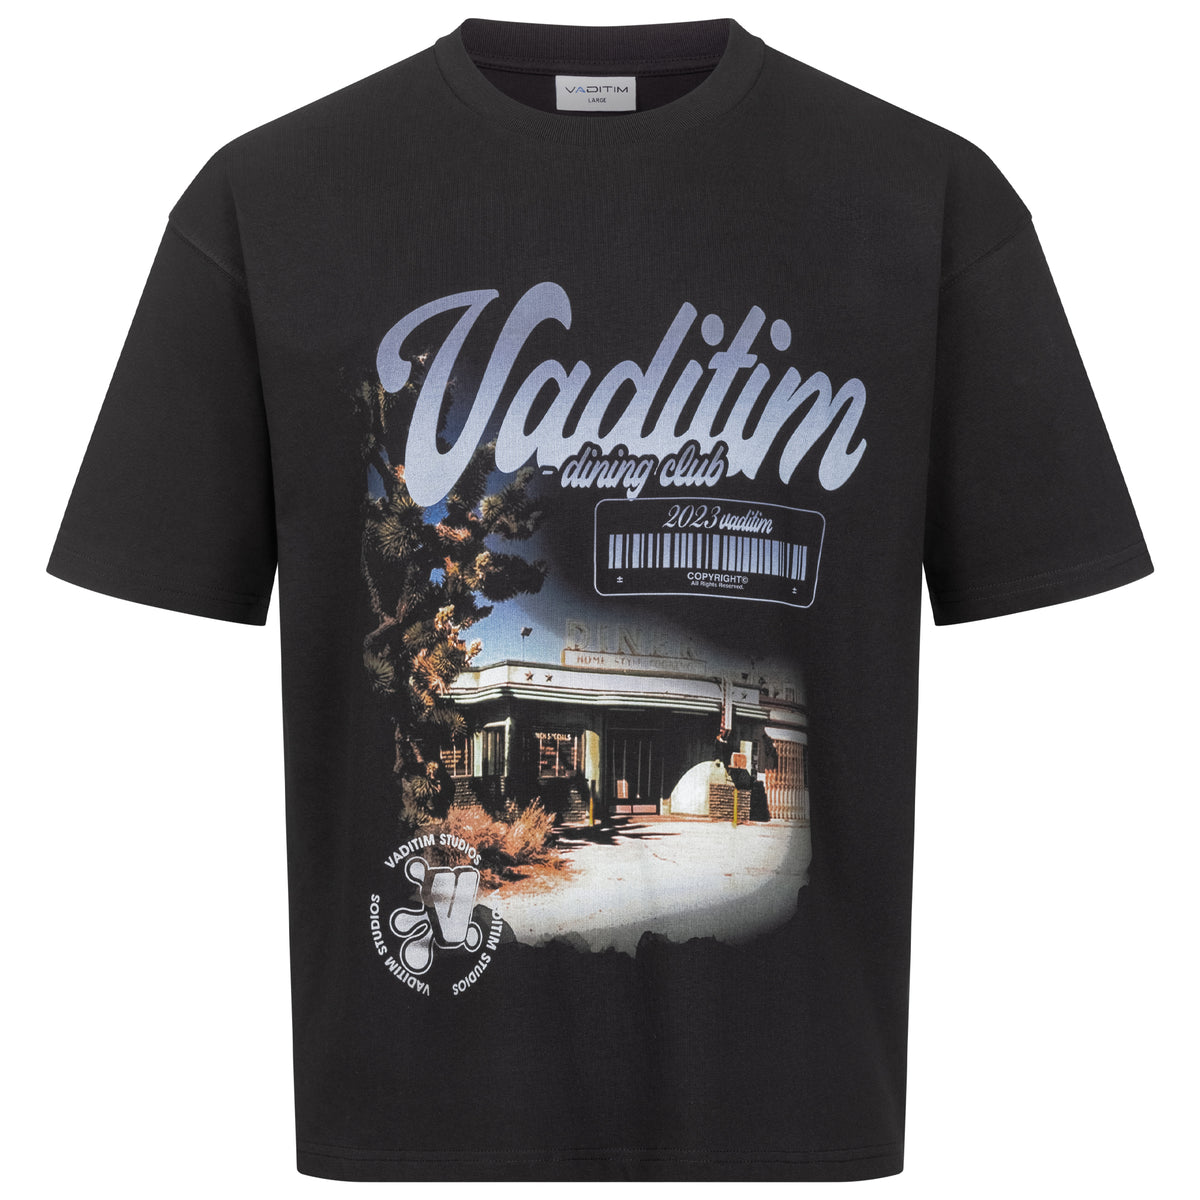 Dining Club T-Shirt  Vaditim   